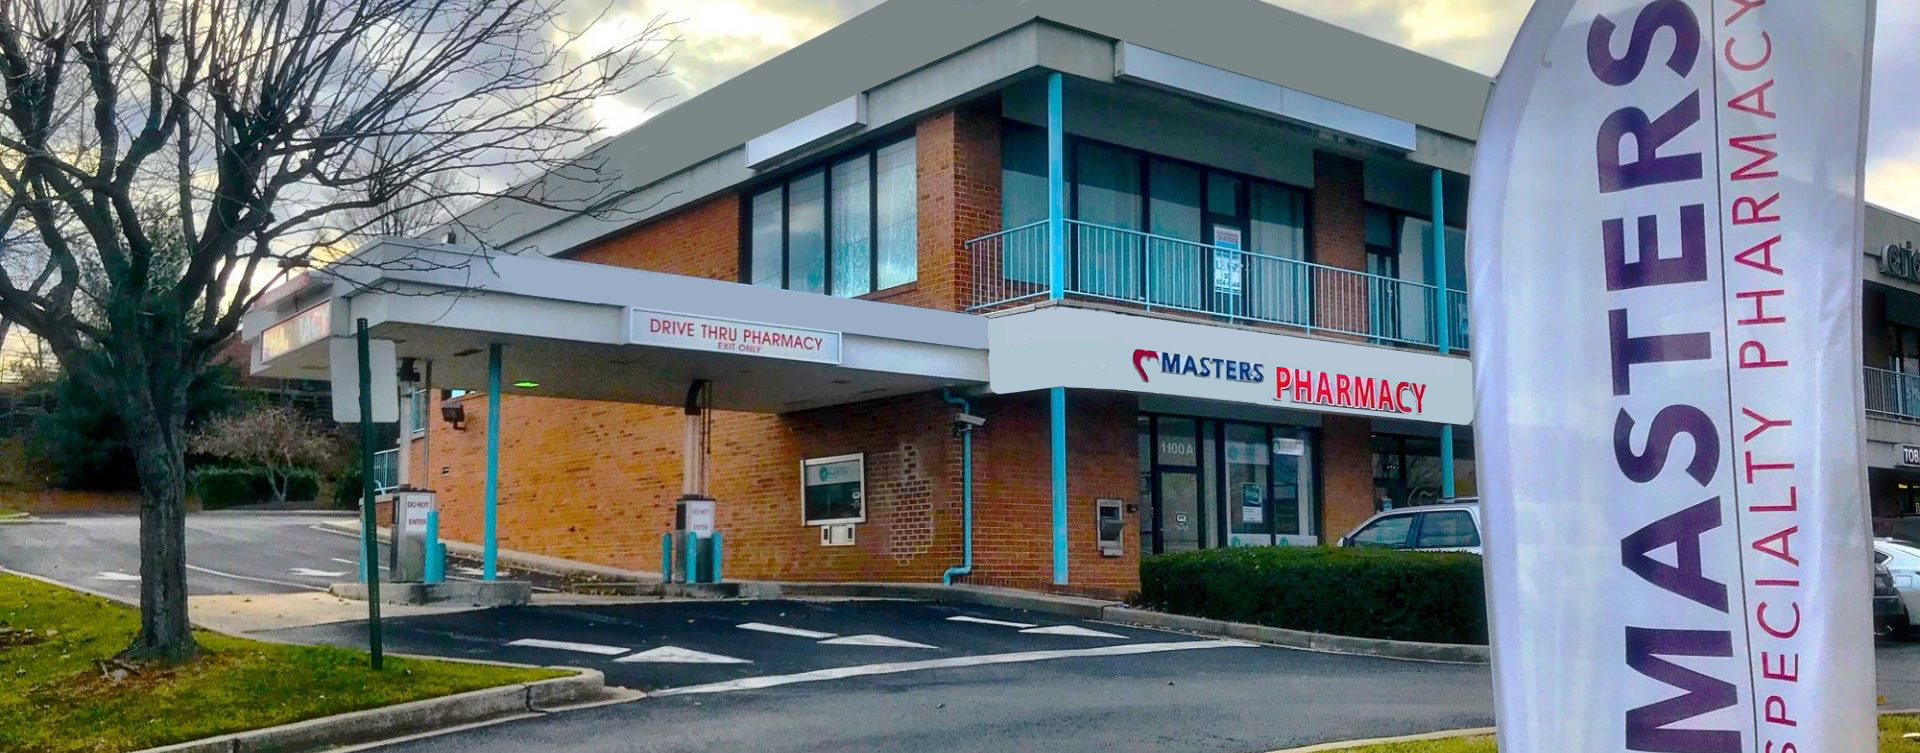 Masters-Specialty-Pharmacy-Frederick-Maryland-e1513804266454